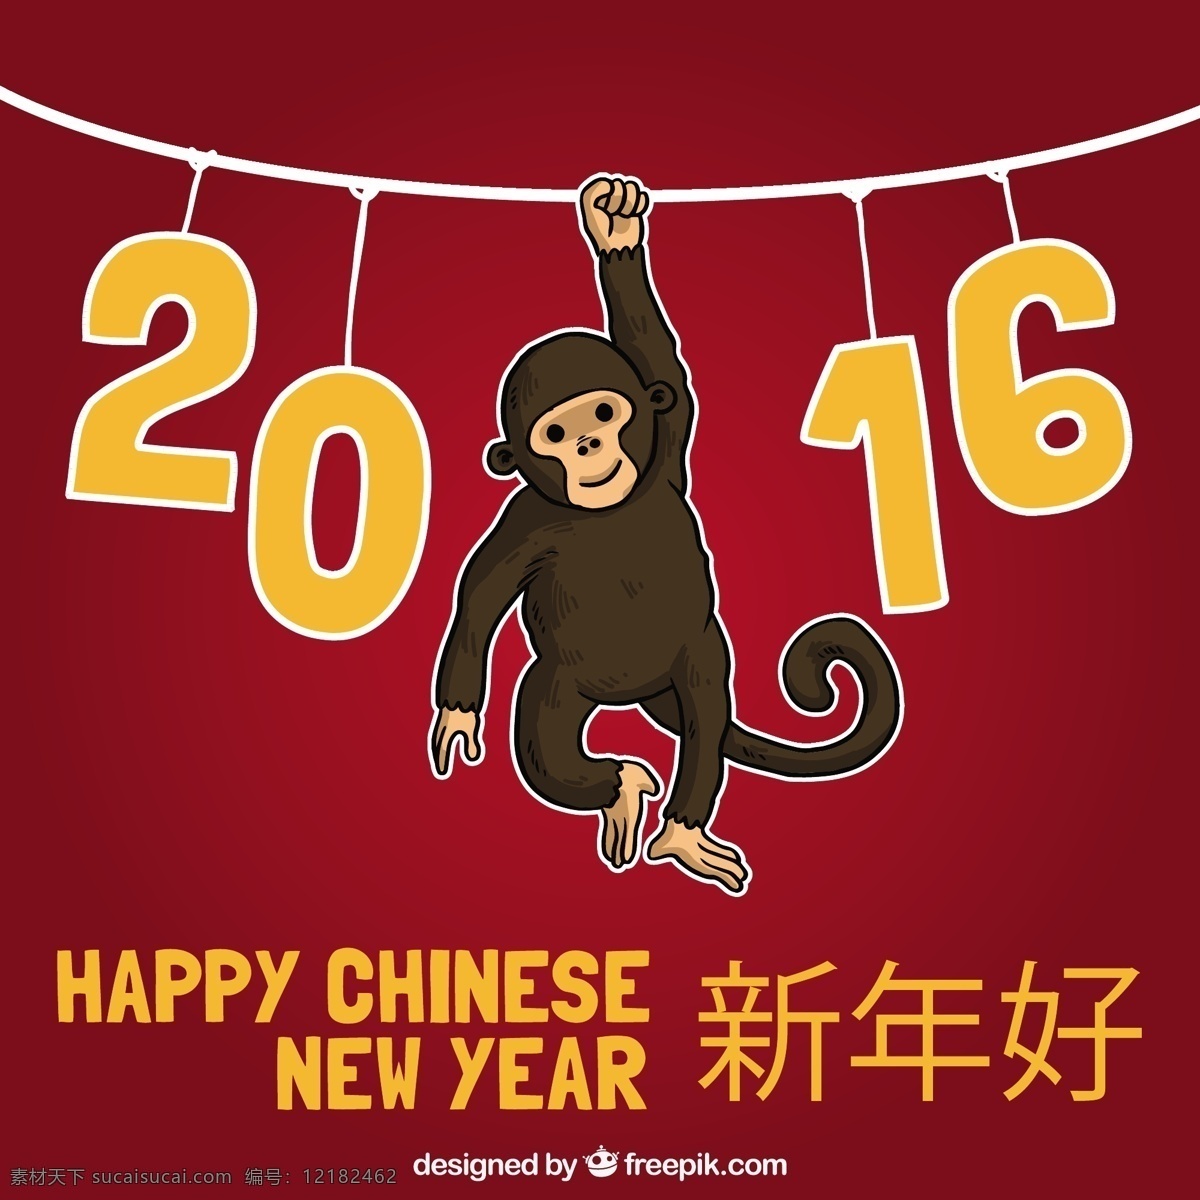 中国新年快乐 圣诞节 聚会 一方面 新的一年 新年快乐 圣诞快乐 冬天 春节 手绘的 快乐的 红色的 猴子 中国 庆祝活动 新事件 中国的节日 2016